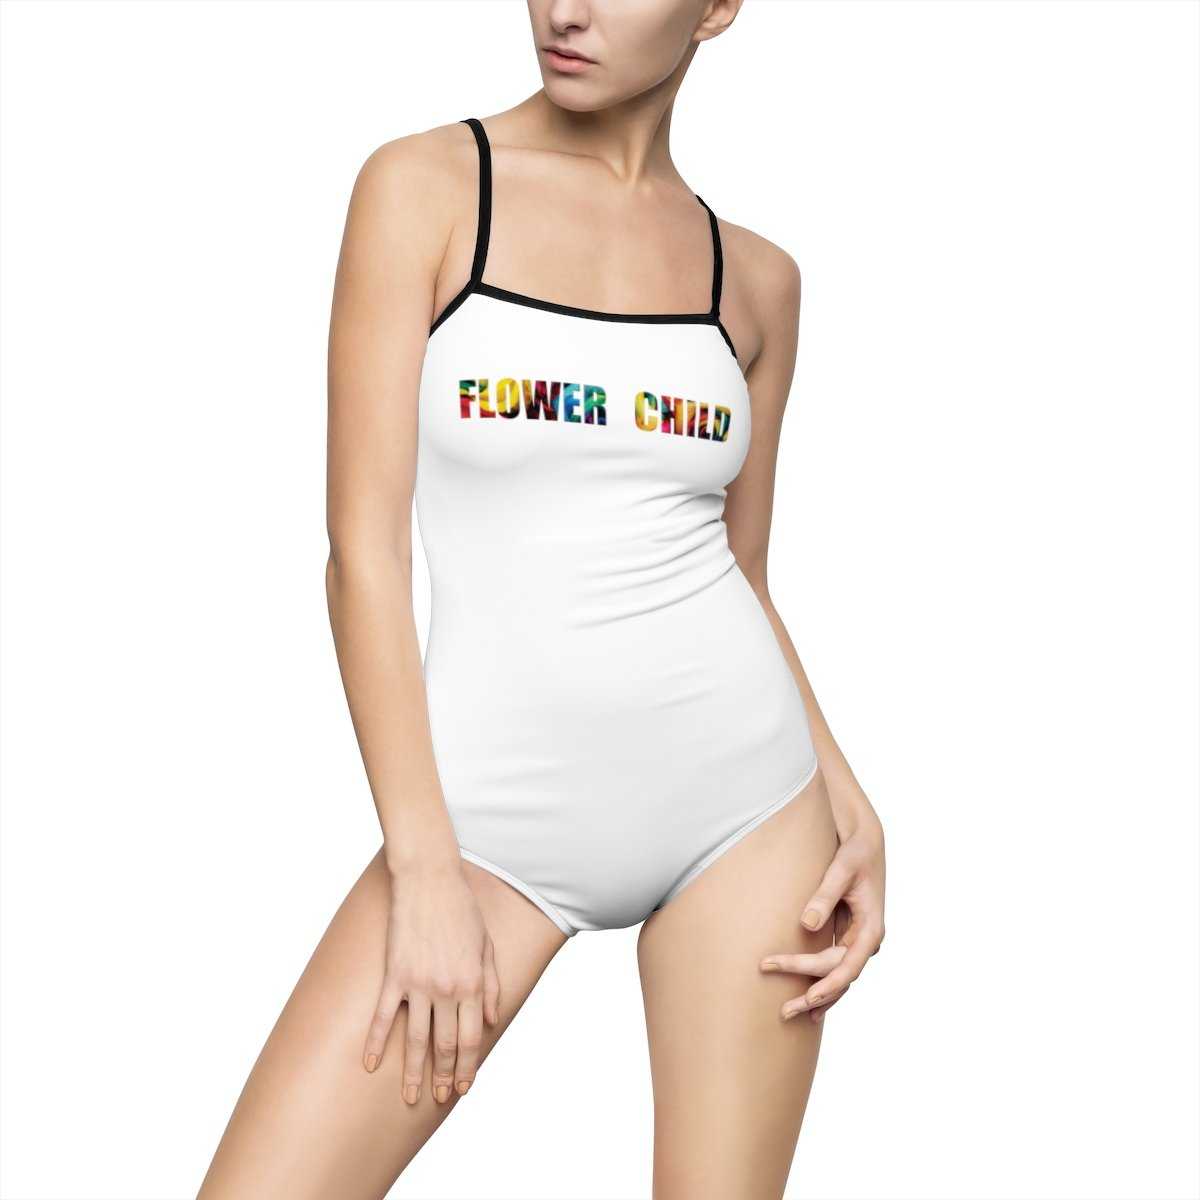 Flower Child One Piece Swimsuit - Floral - shopcontrabrands.com